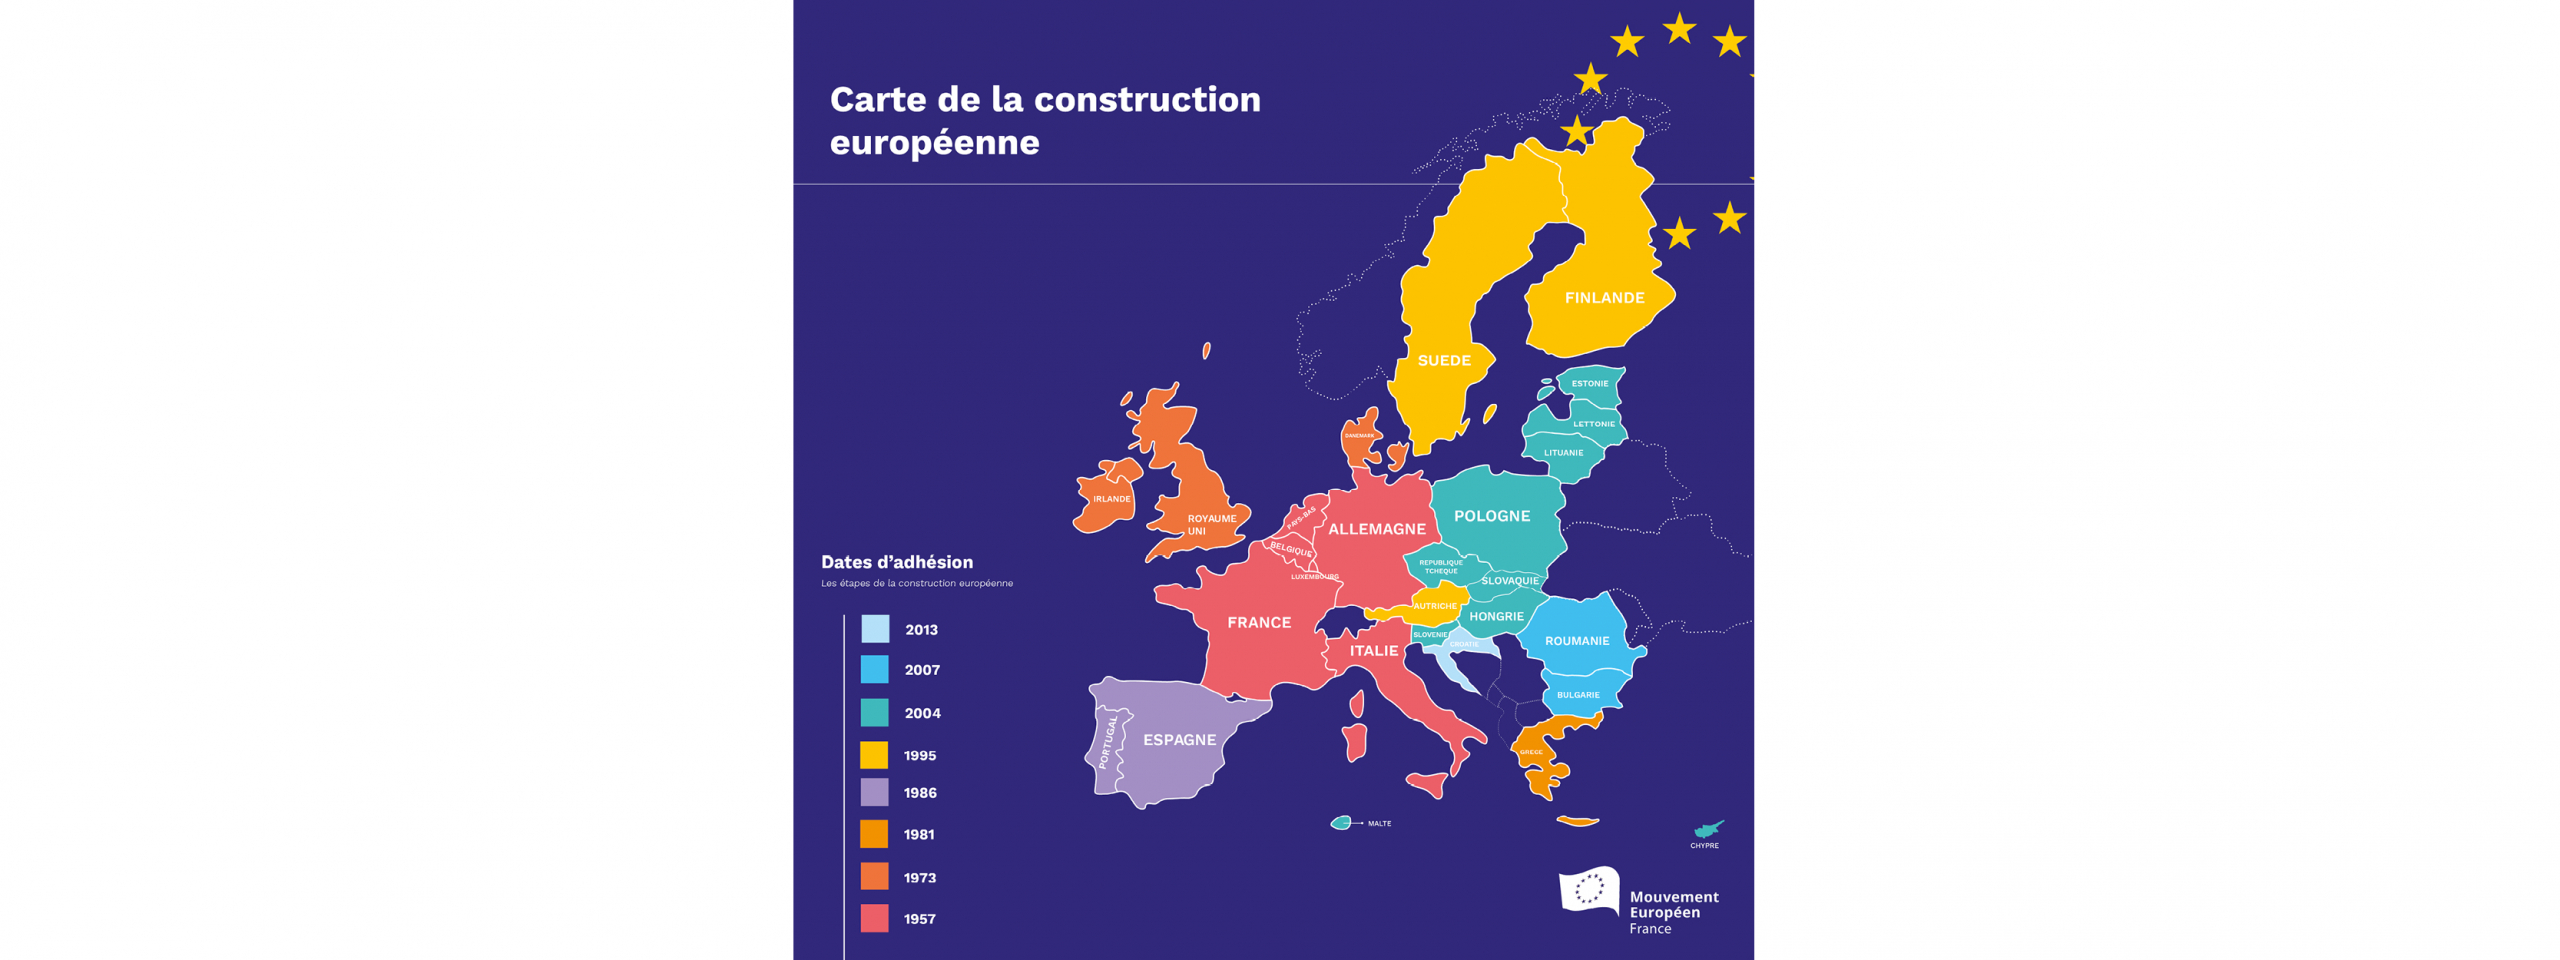 Union Européenne : La Construction Européenne En Carte destiné Carte Construction Européenne